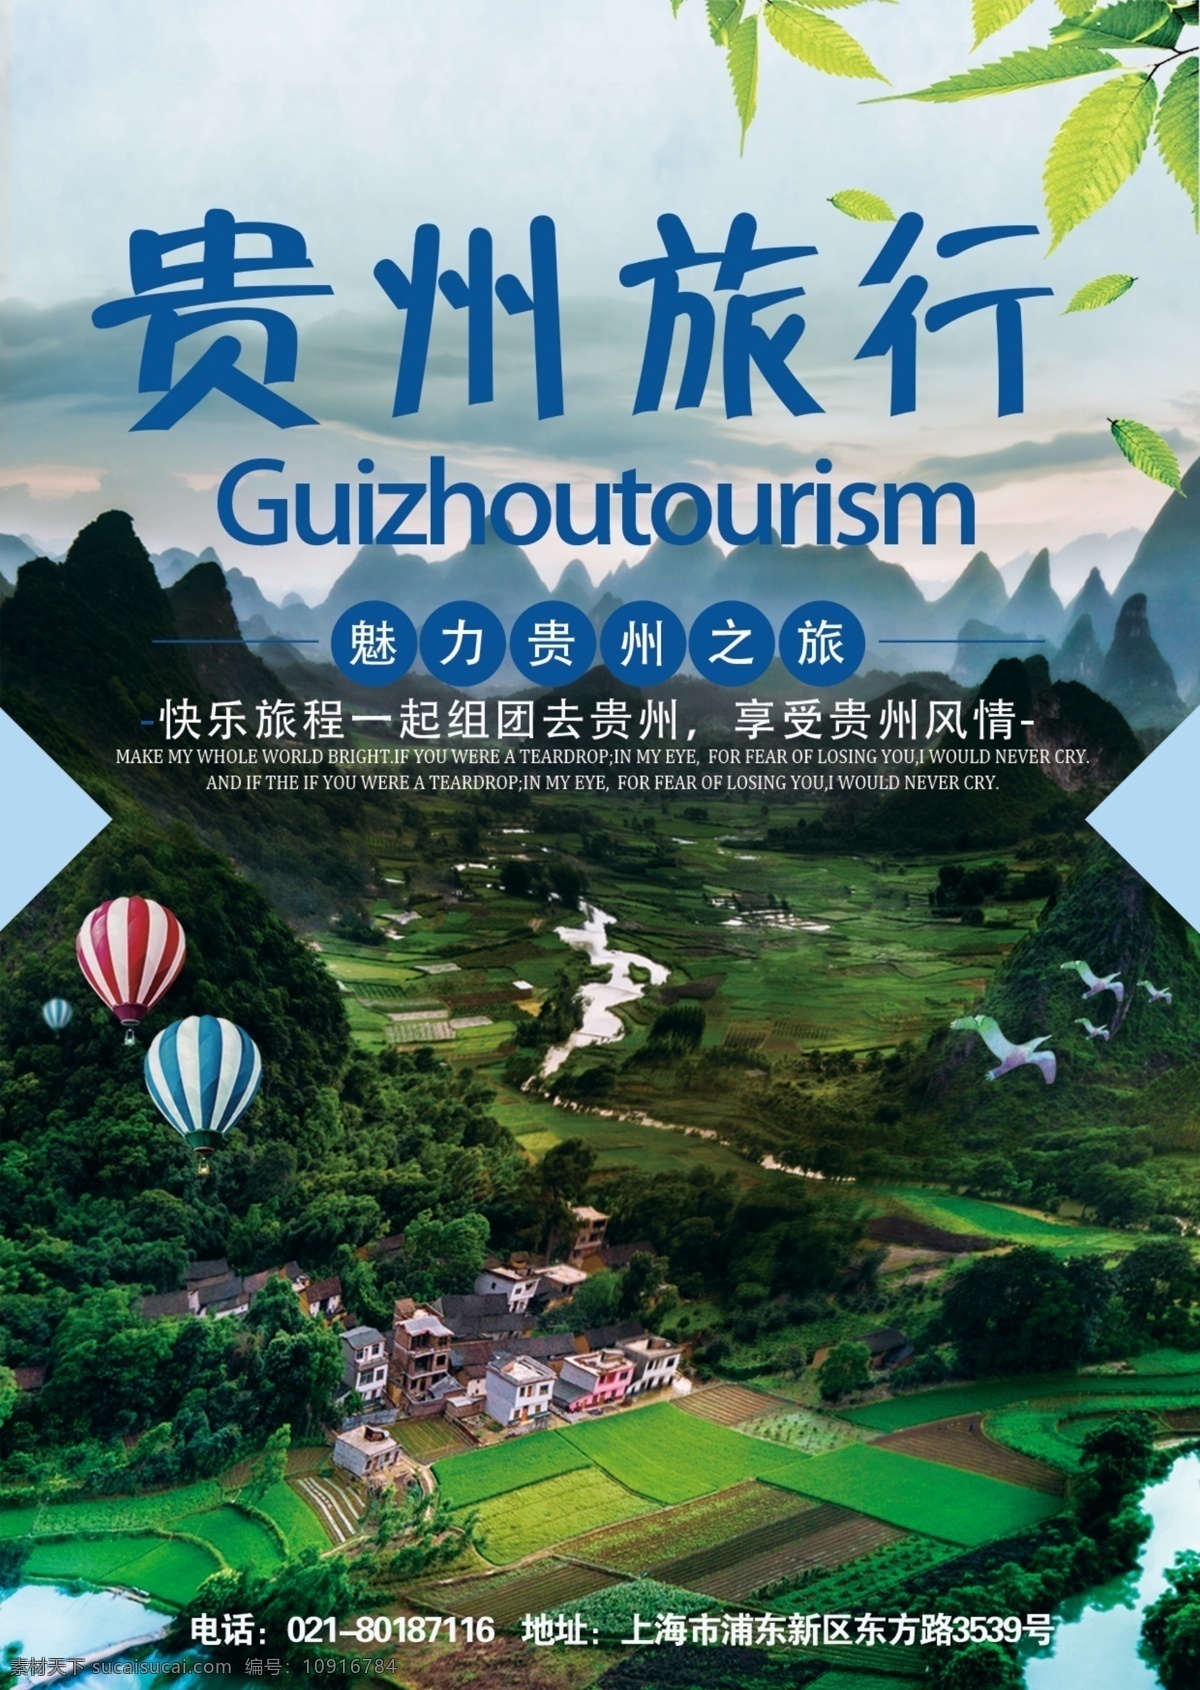 贵州 旅行 宣传单 旅游 旅游传单 传单设计 贵州旅行 旅行宣传单 跟团游 旅行社传单 旅行社宣传单